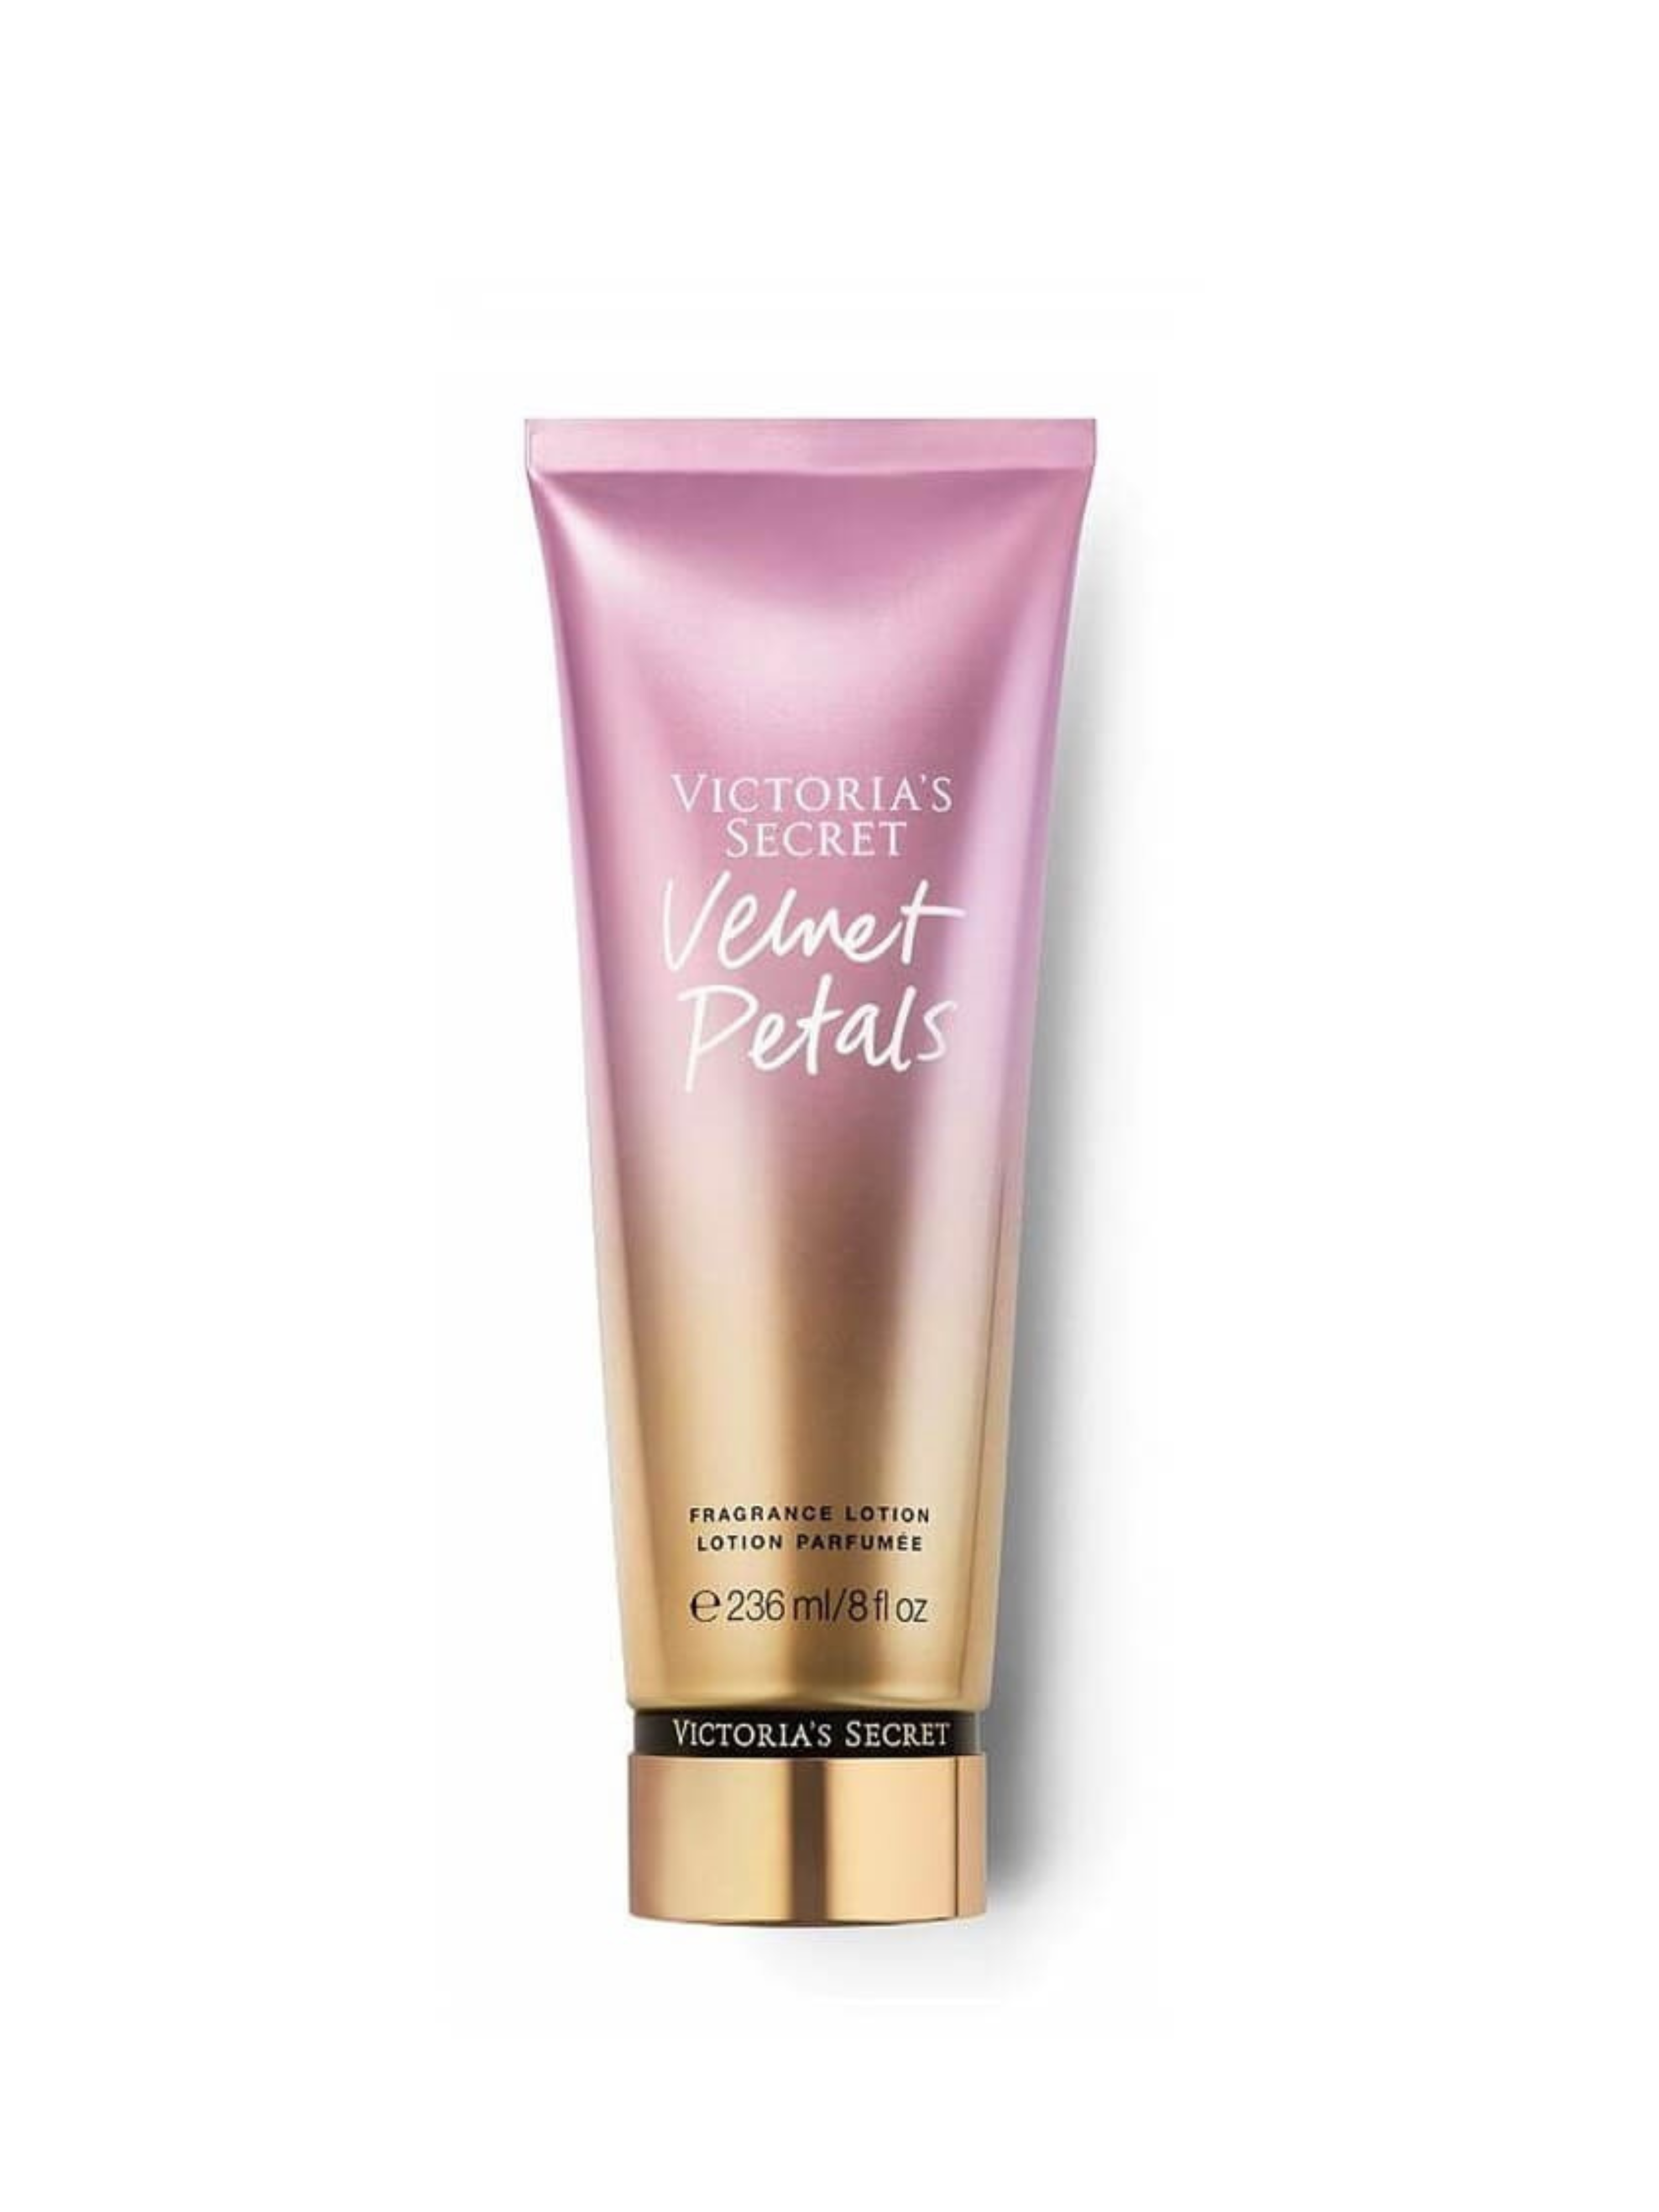 Victoria's Secret Velvet Petals body lotion